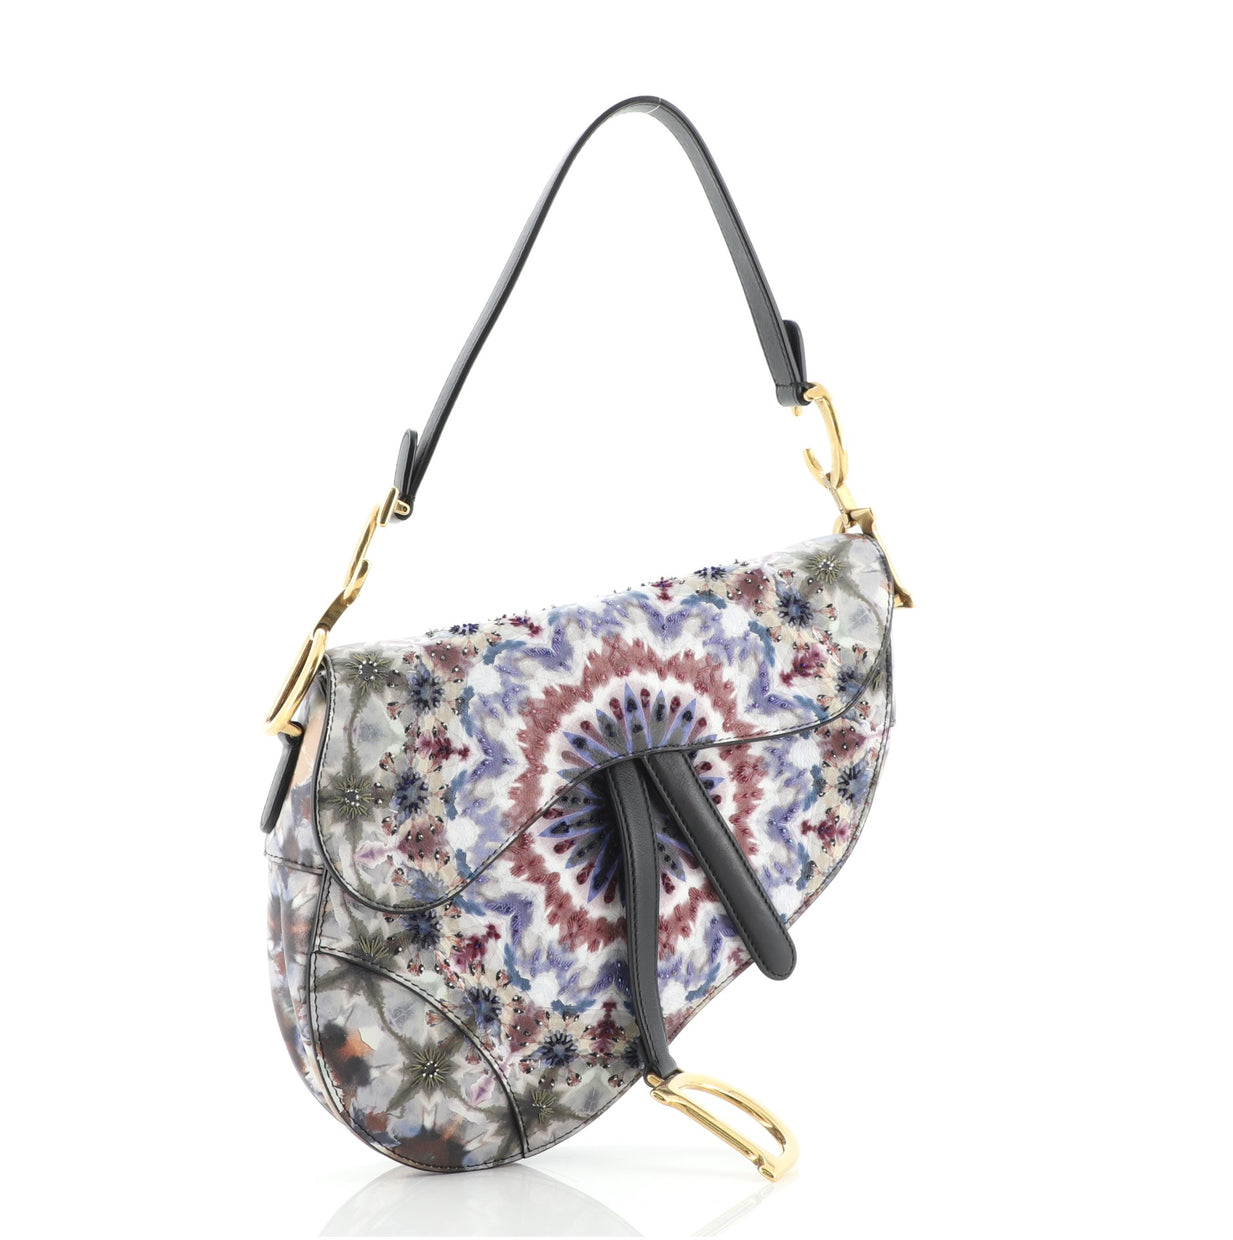 Christian Dior Saddle Handbag Beaded KaleiDiorscopic Calfskin Medium ...